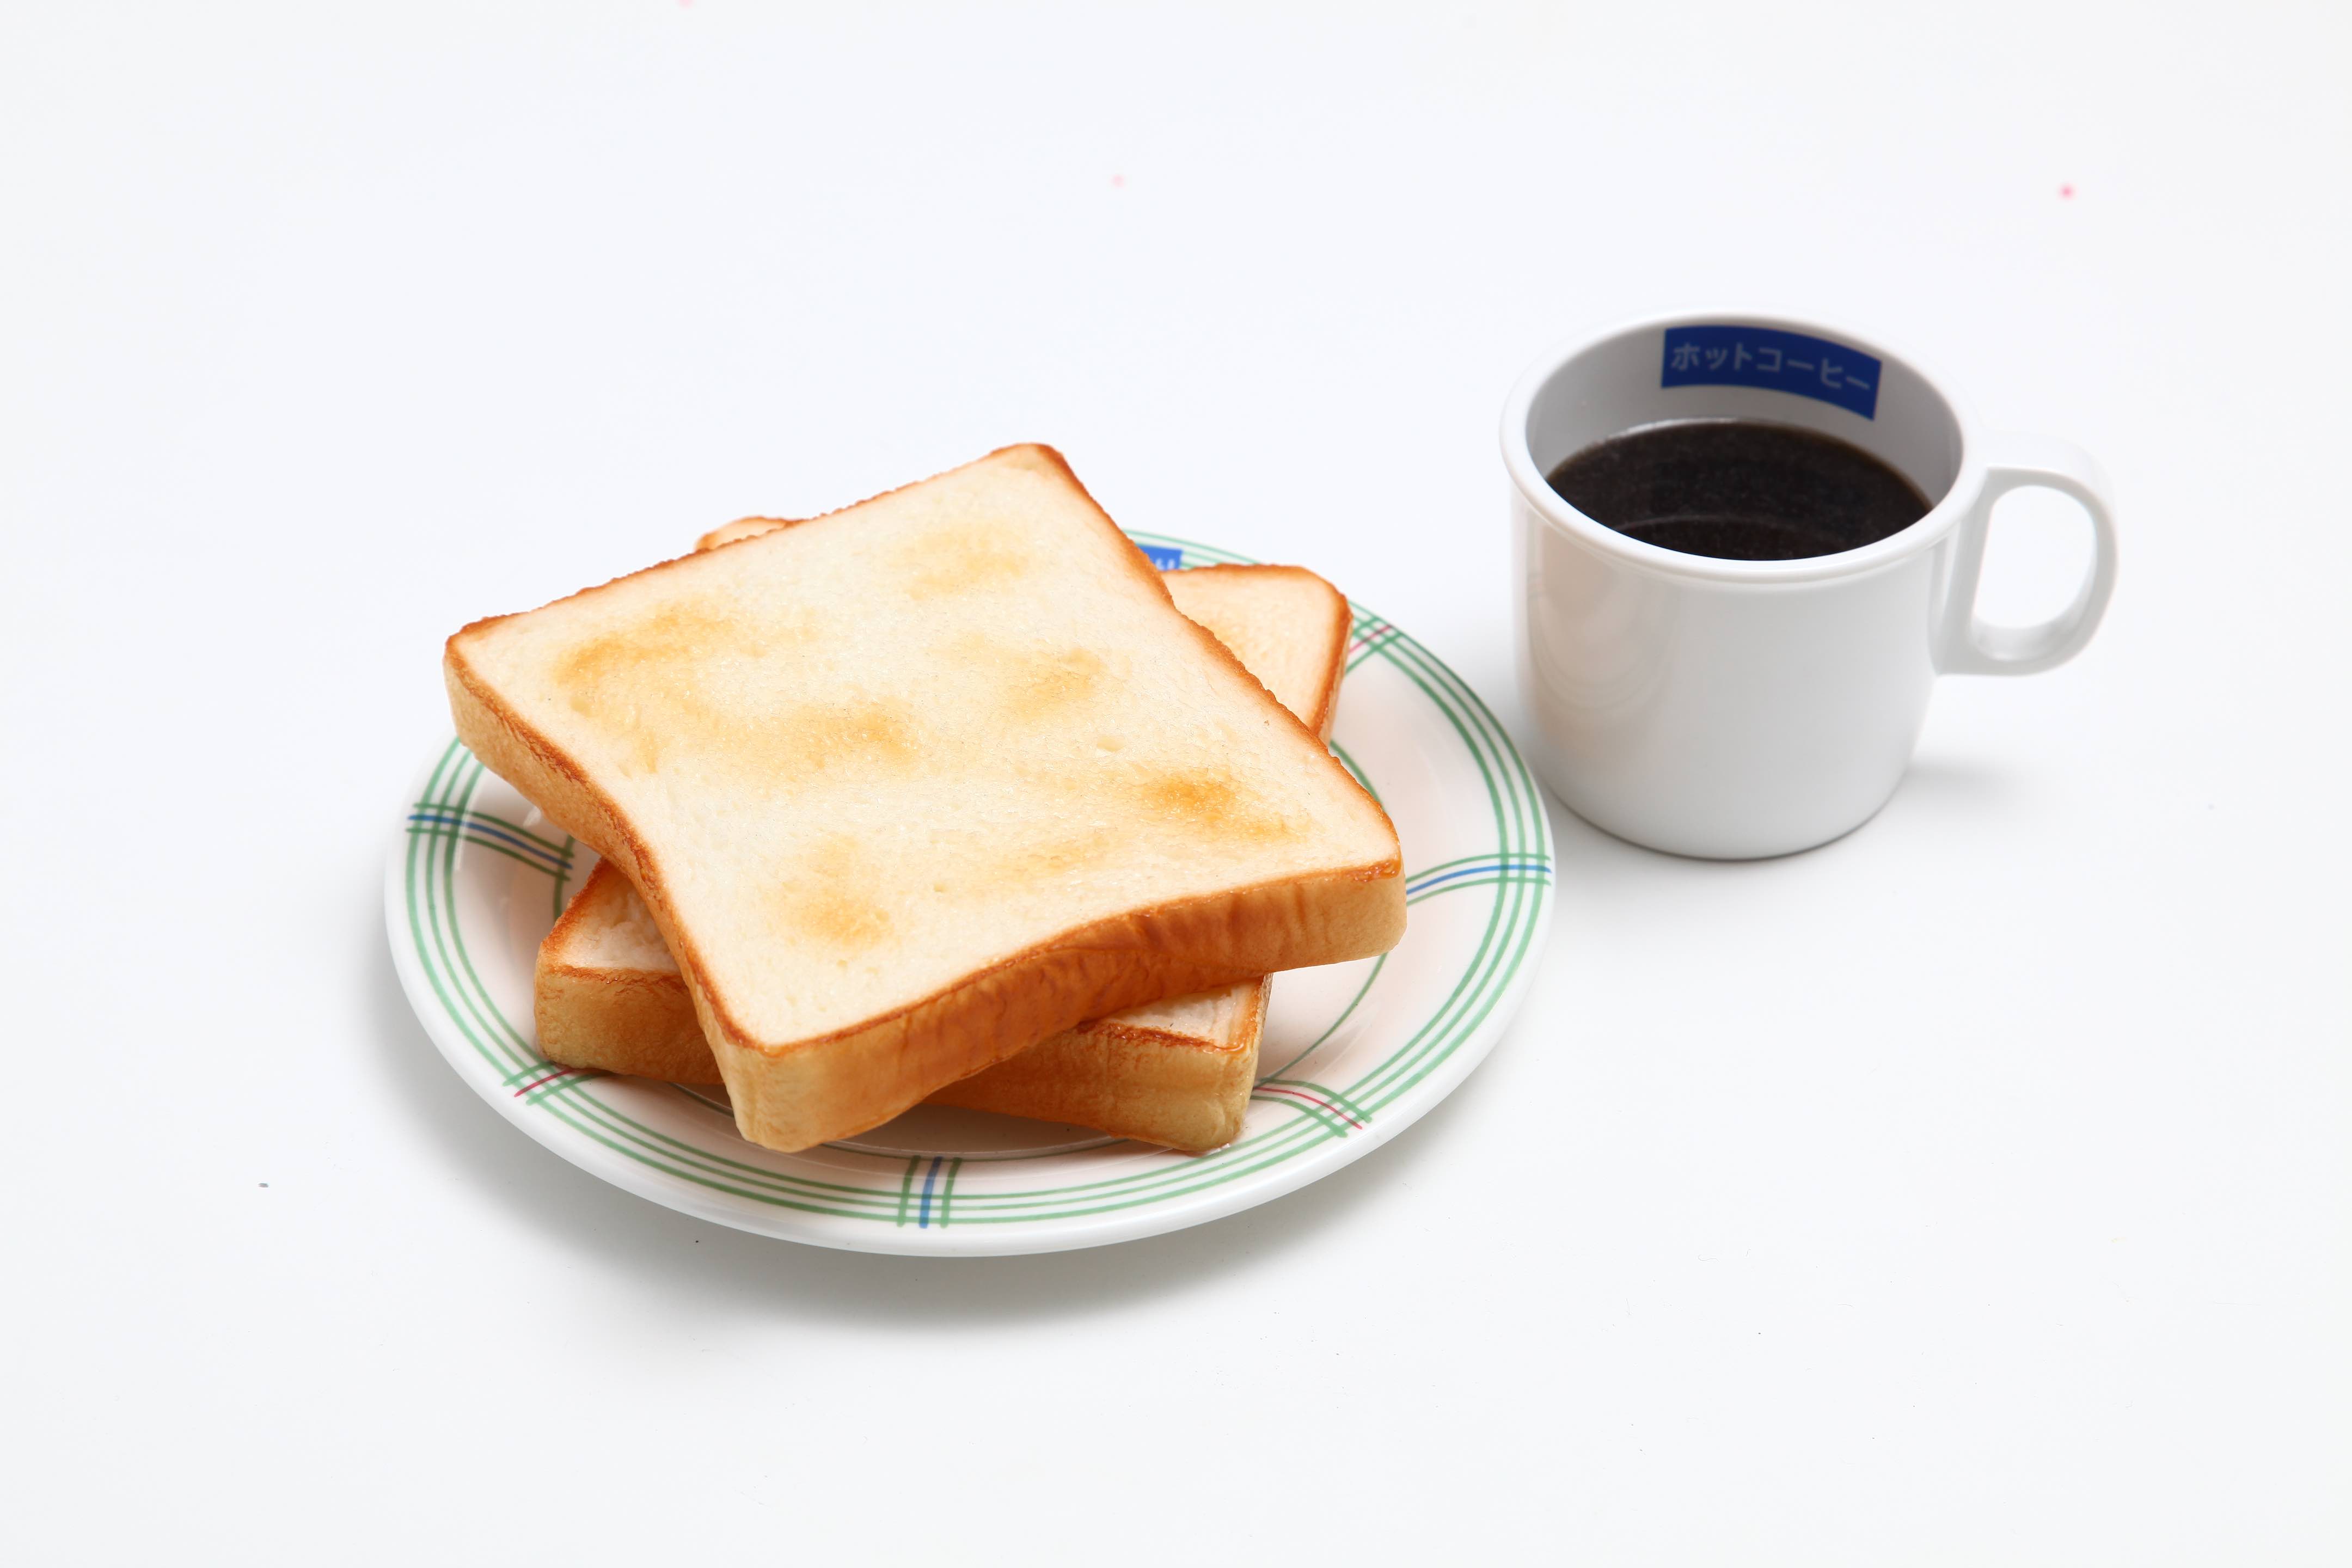 Sample Food - Toast